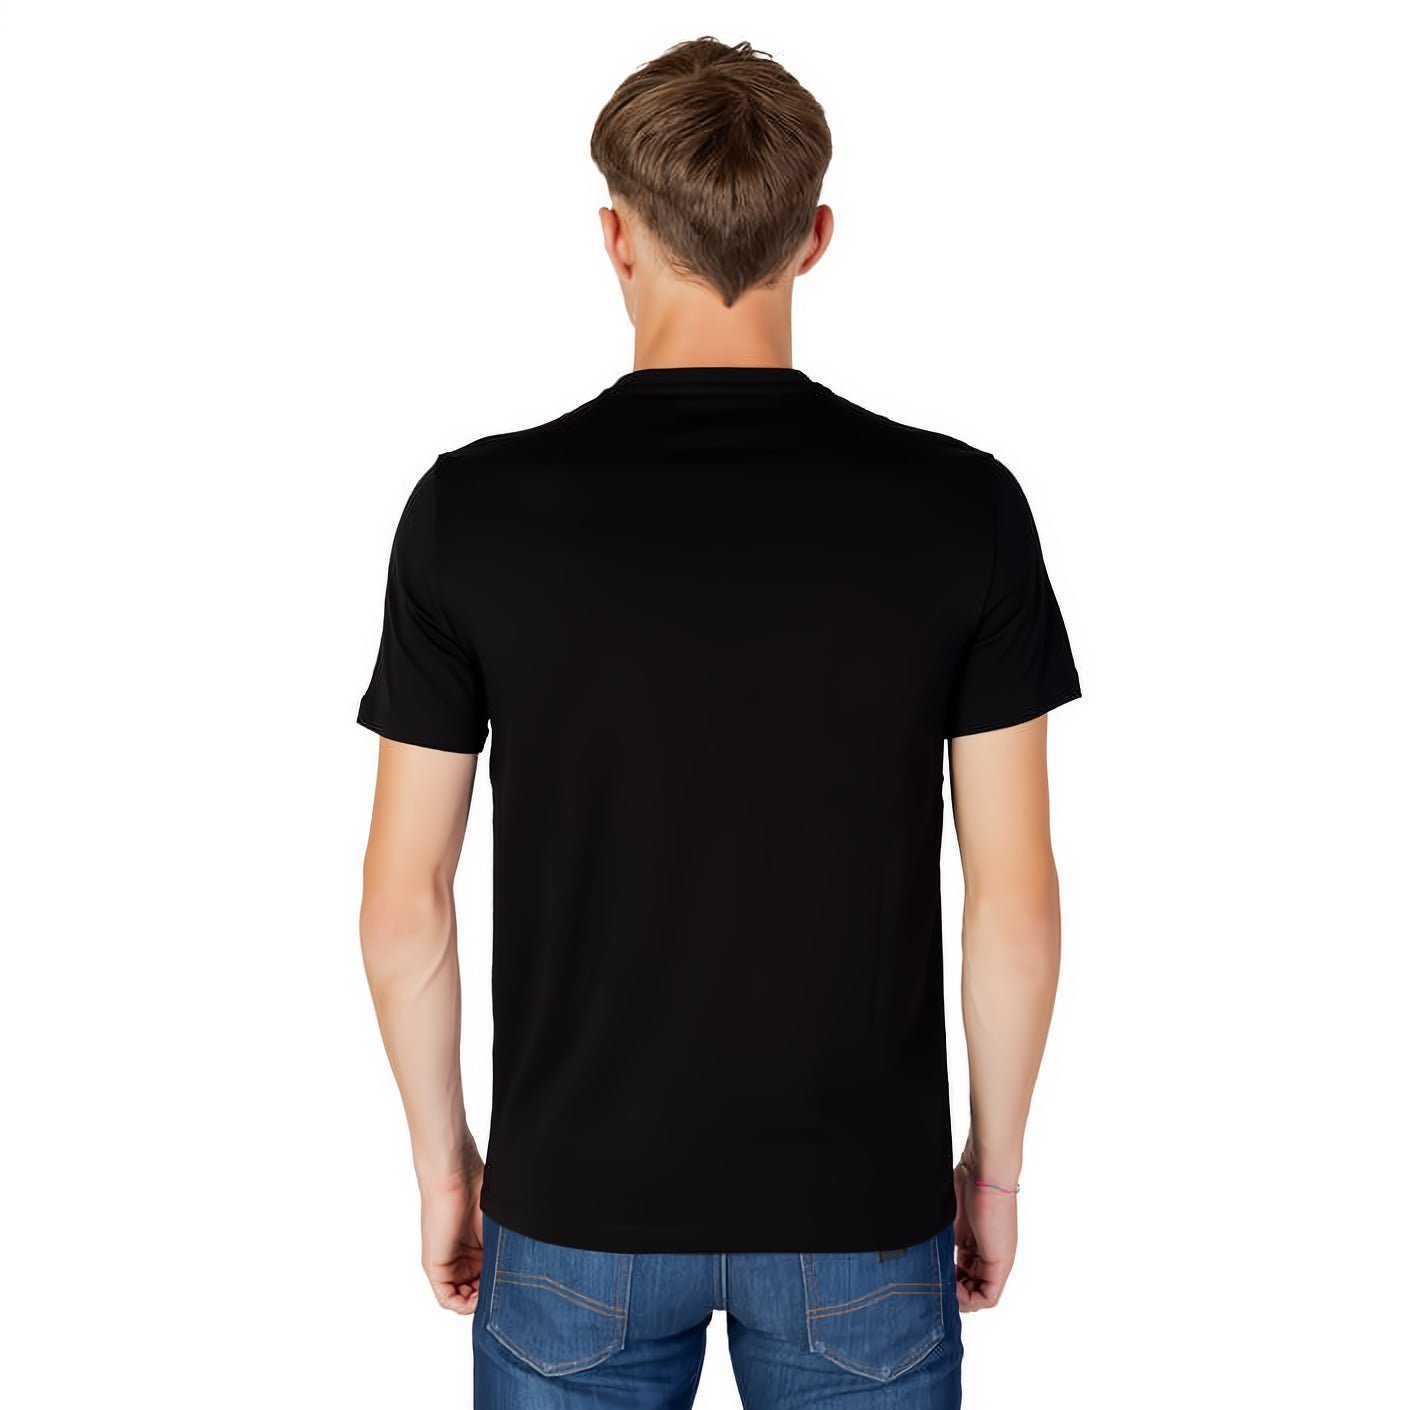 EXCHANGE Must-Have Rundhals, ein T-Shirt für Ihre kurzarm, ARMANI Kleidungskollektion!